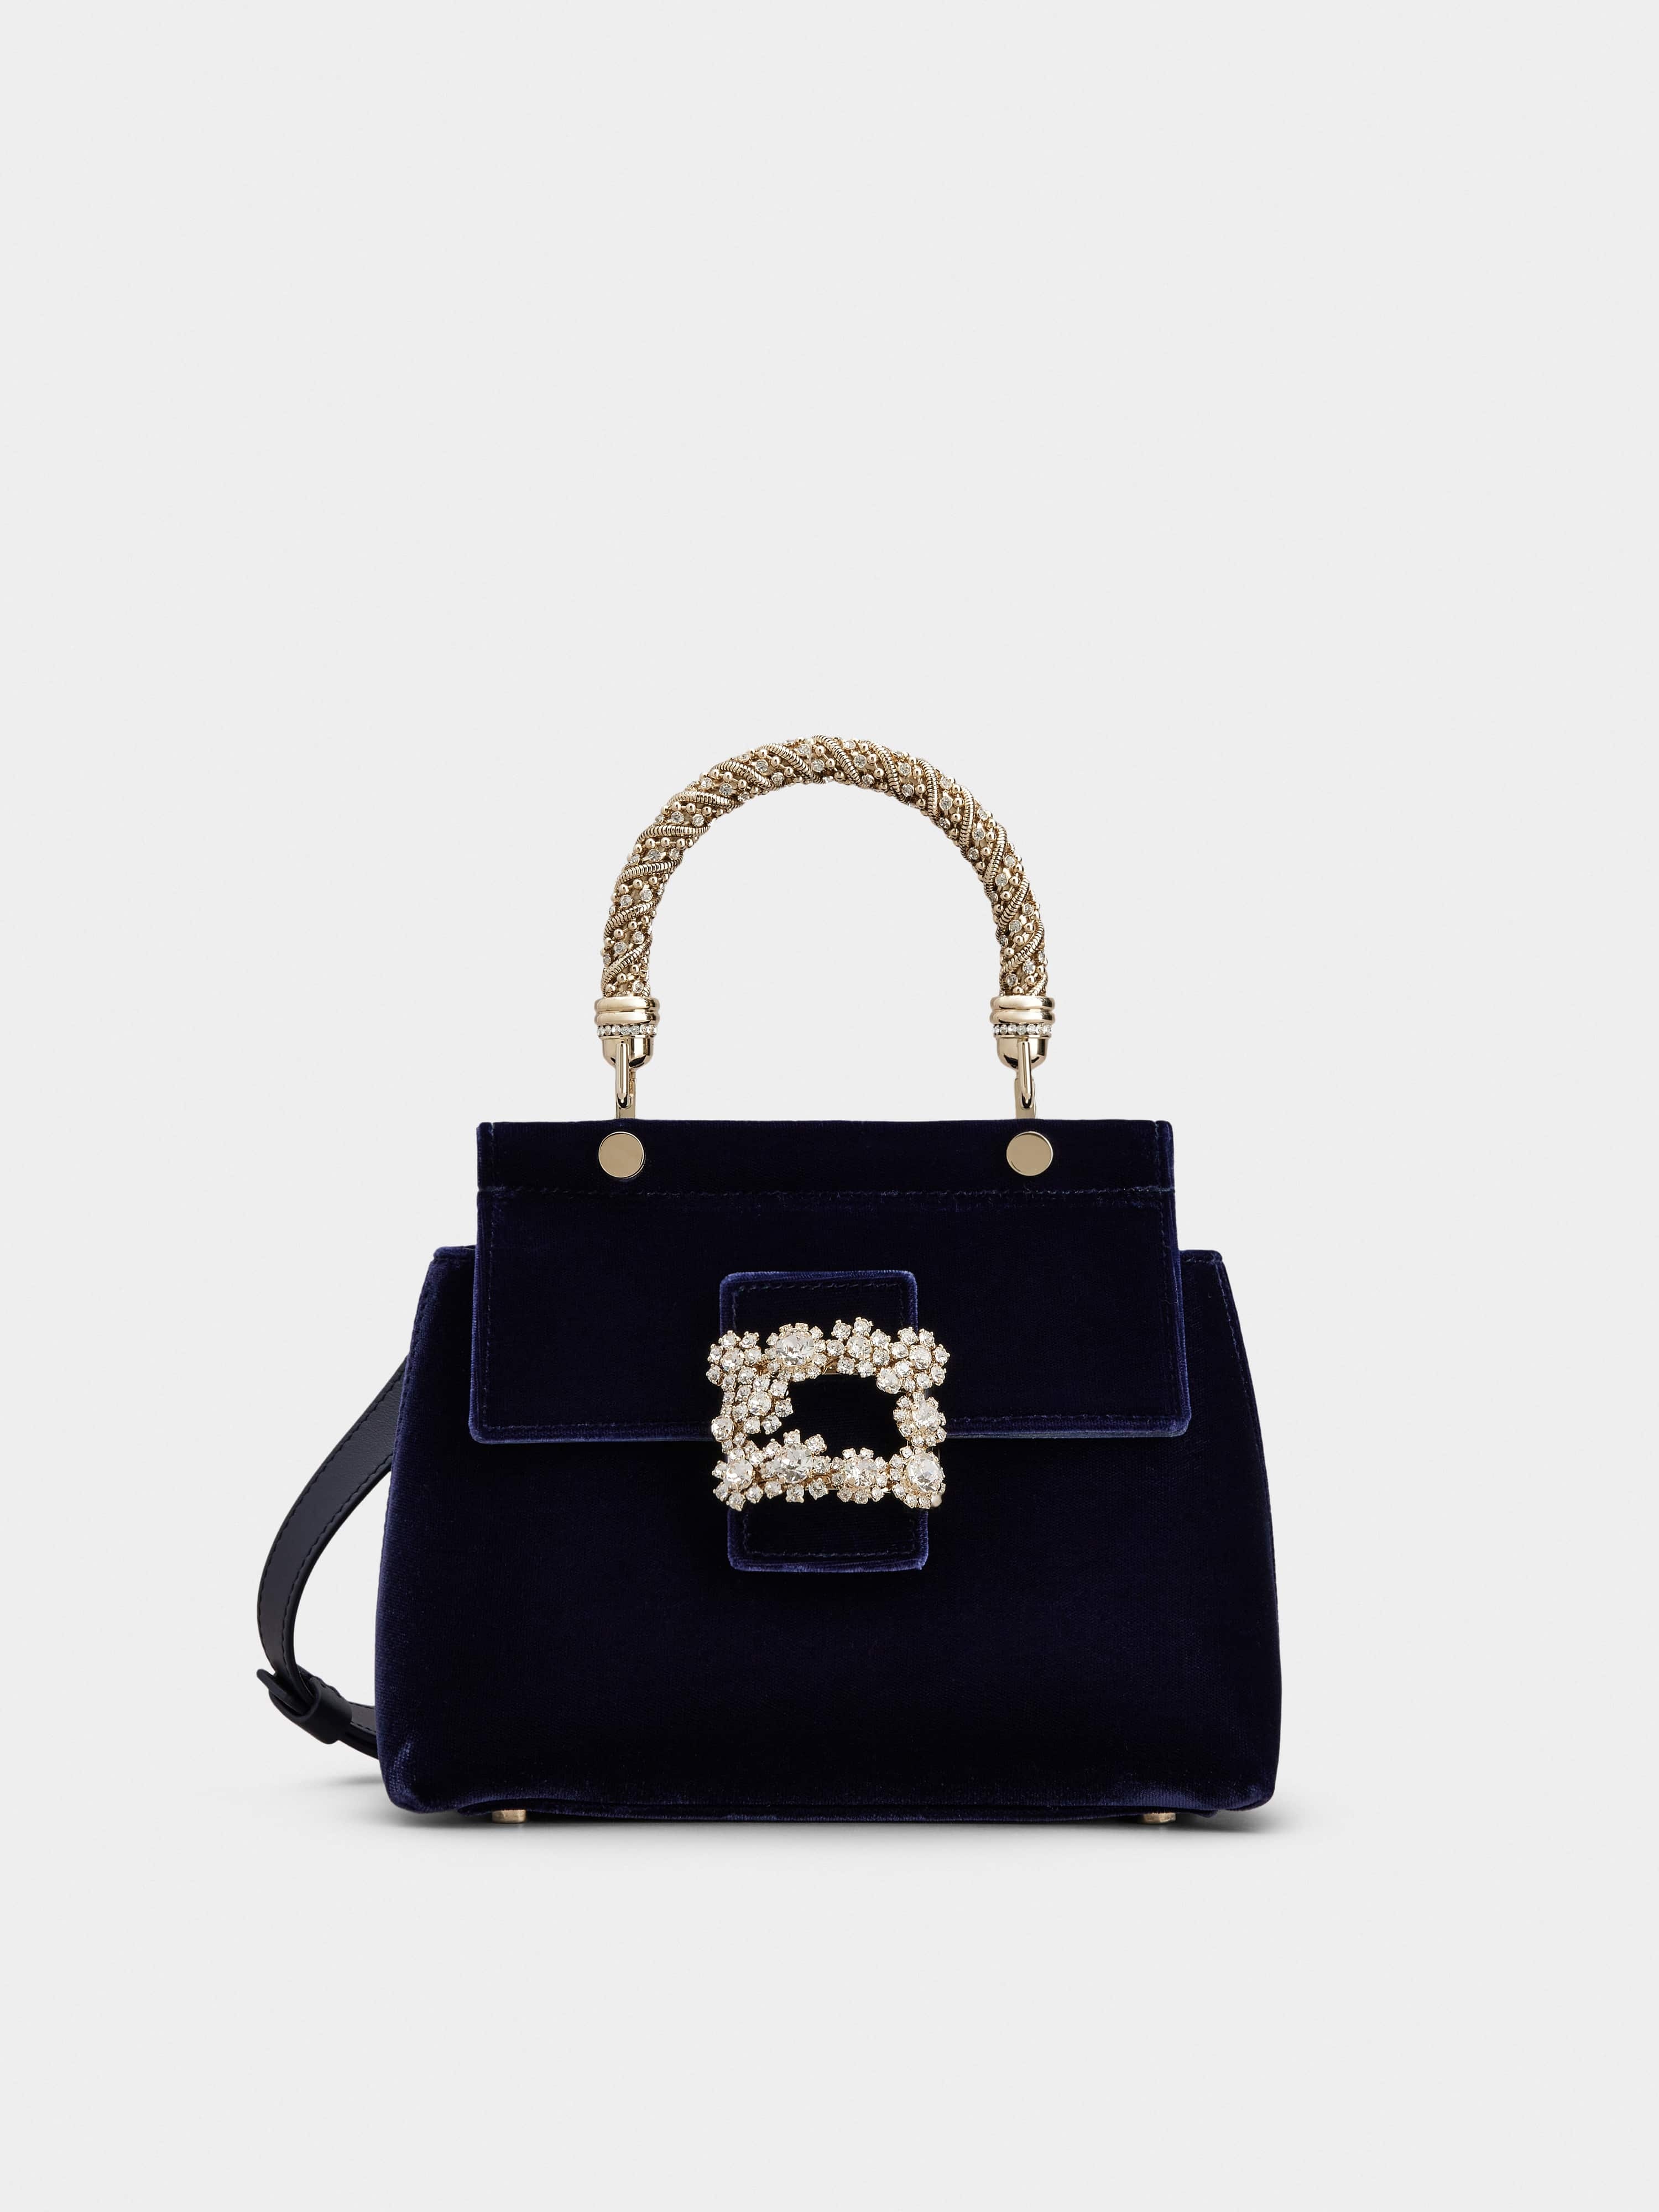 Roger Vivier - Flower Strass Buckle Clutch Bag in Velvet, Blue, Handbags